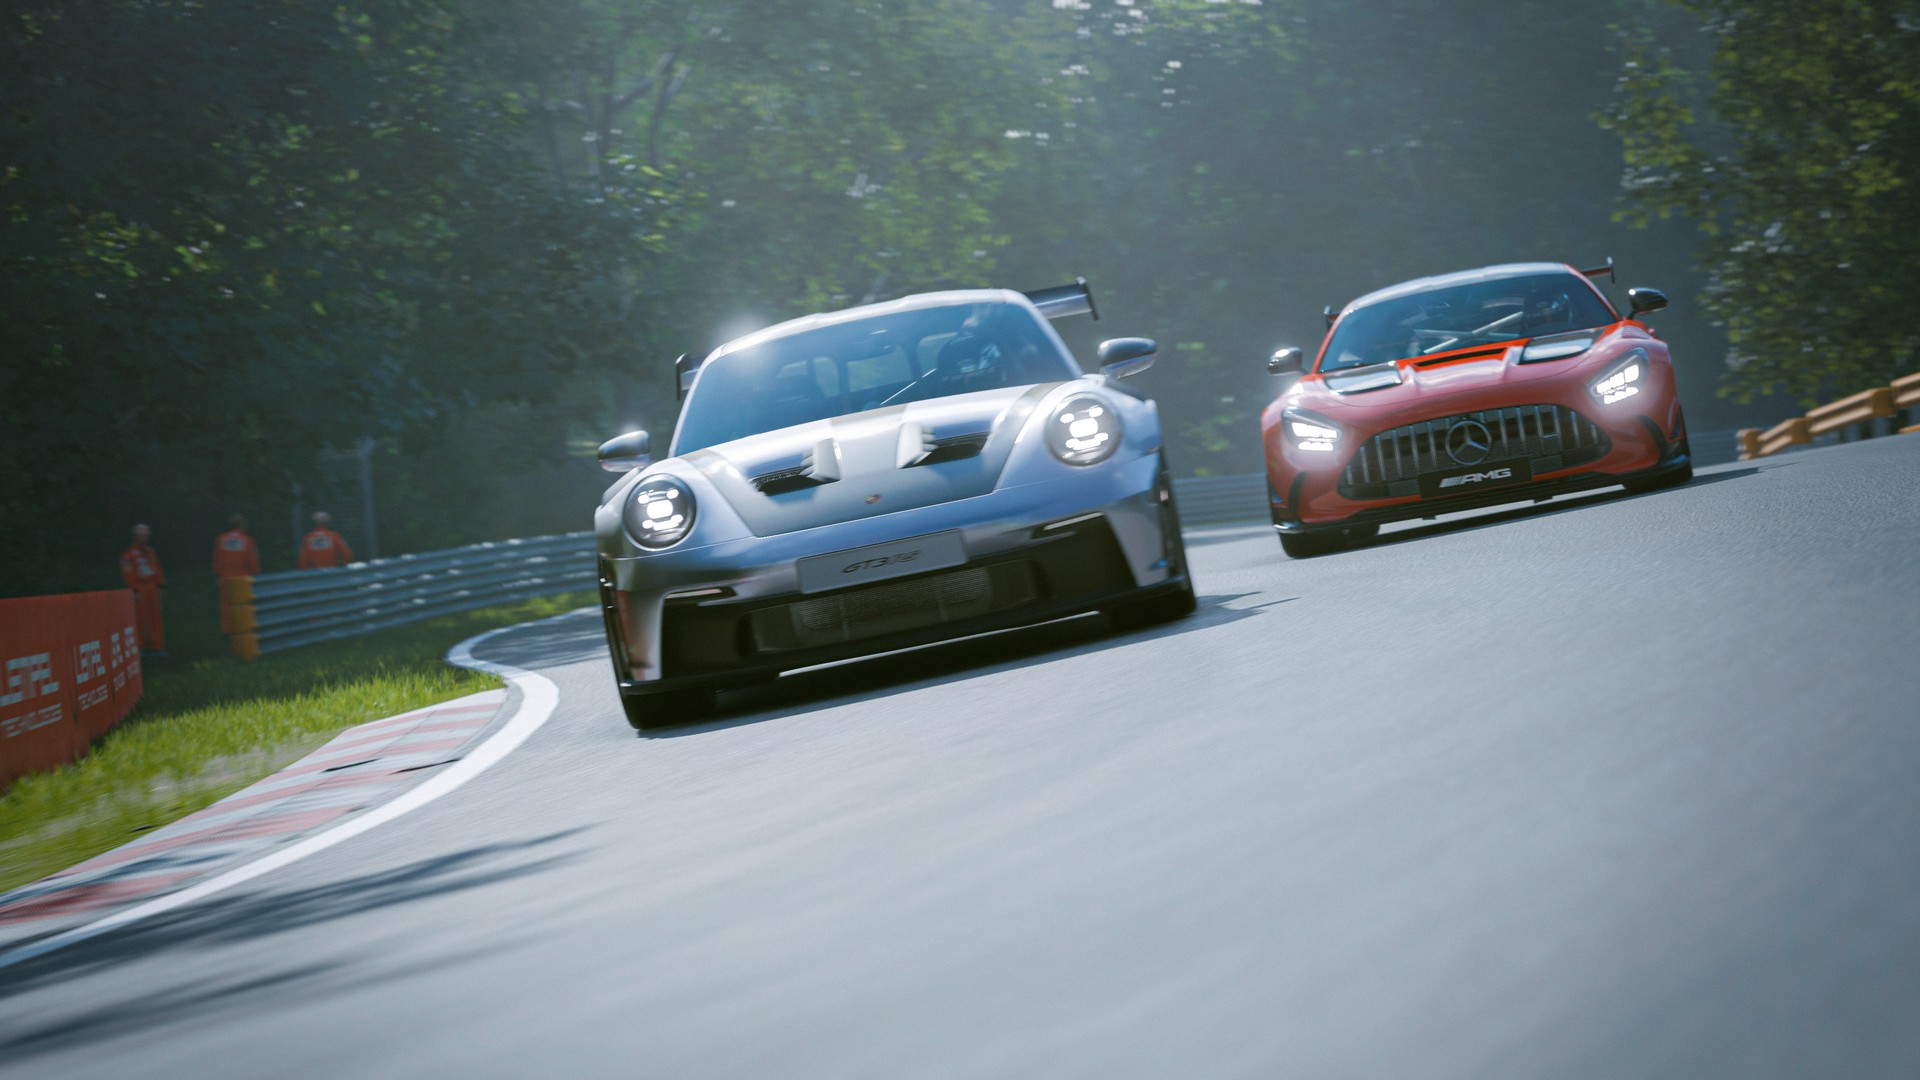 Dwa samochody sportowe – Porsche 911 GT3 na czele i Mercedes AMG GT – ścigają się na torze wyścigowym w grze Gran Turismo 7 w słoneczny dzień.